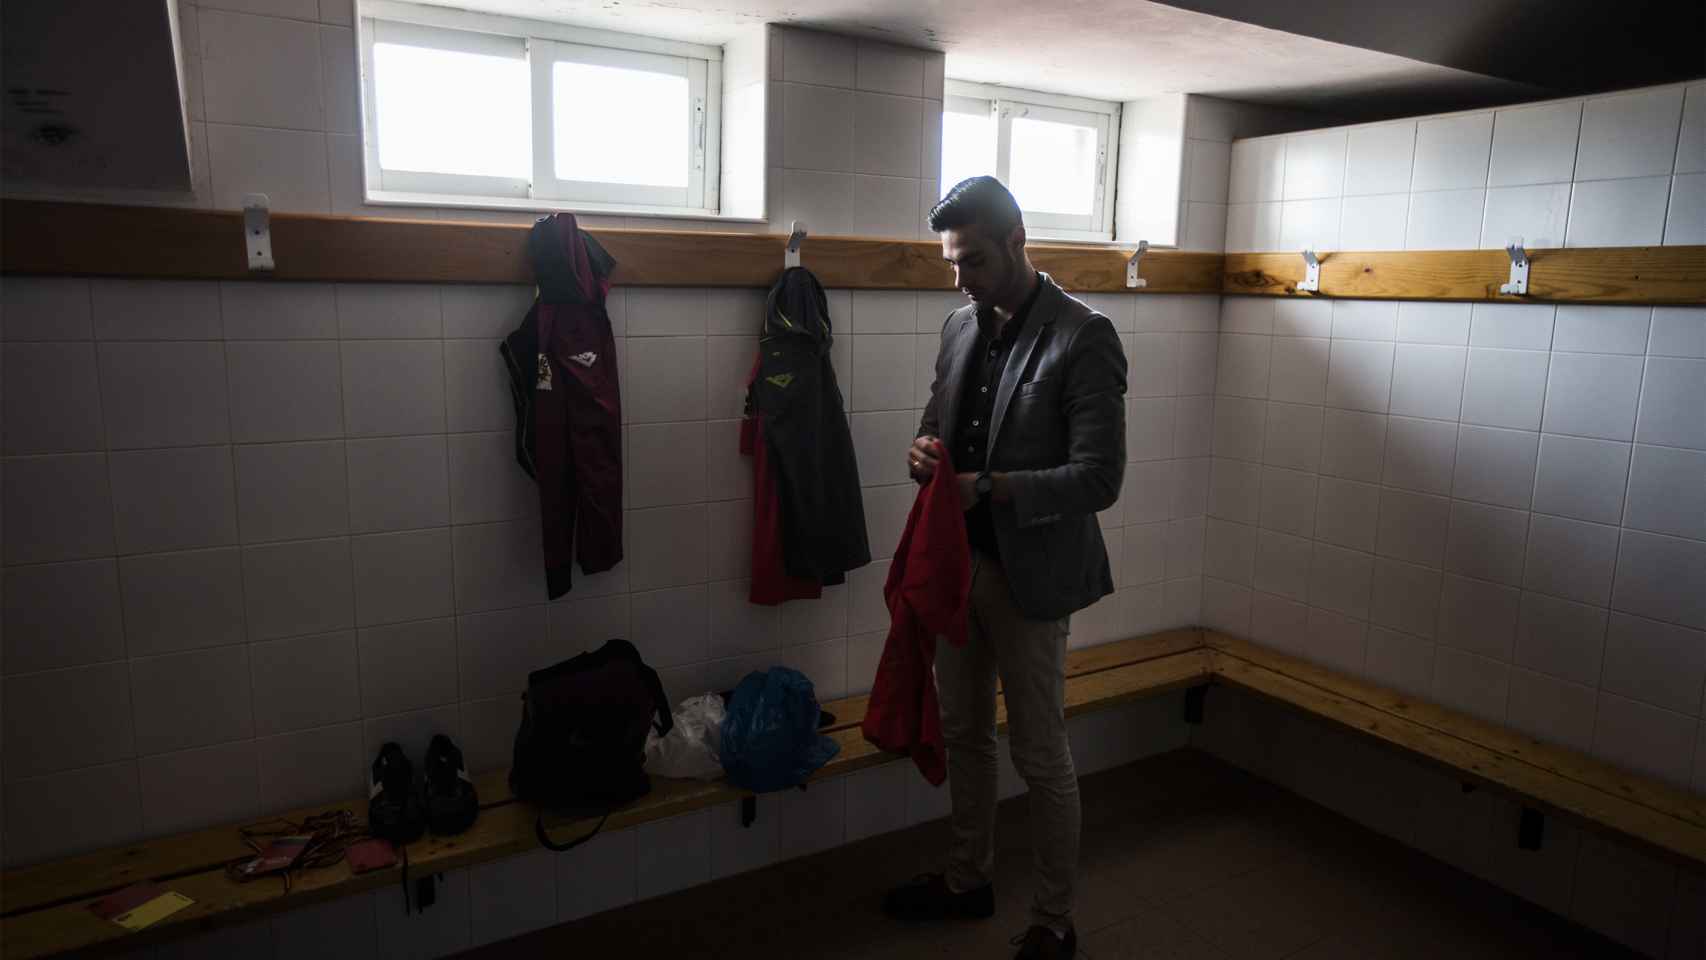 Jesús Tomillero se ha desplazado hasta Zamora para arbitrar un partido contra la homofobia en el deporte